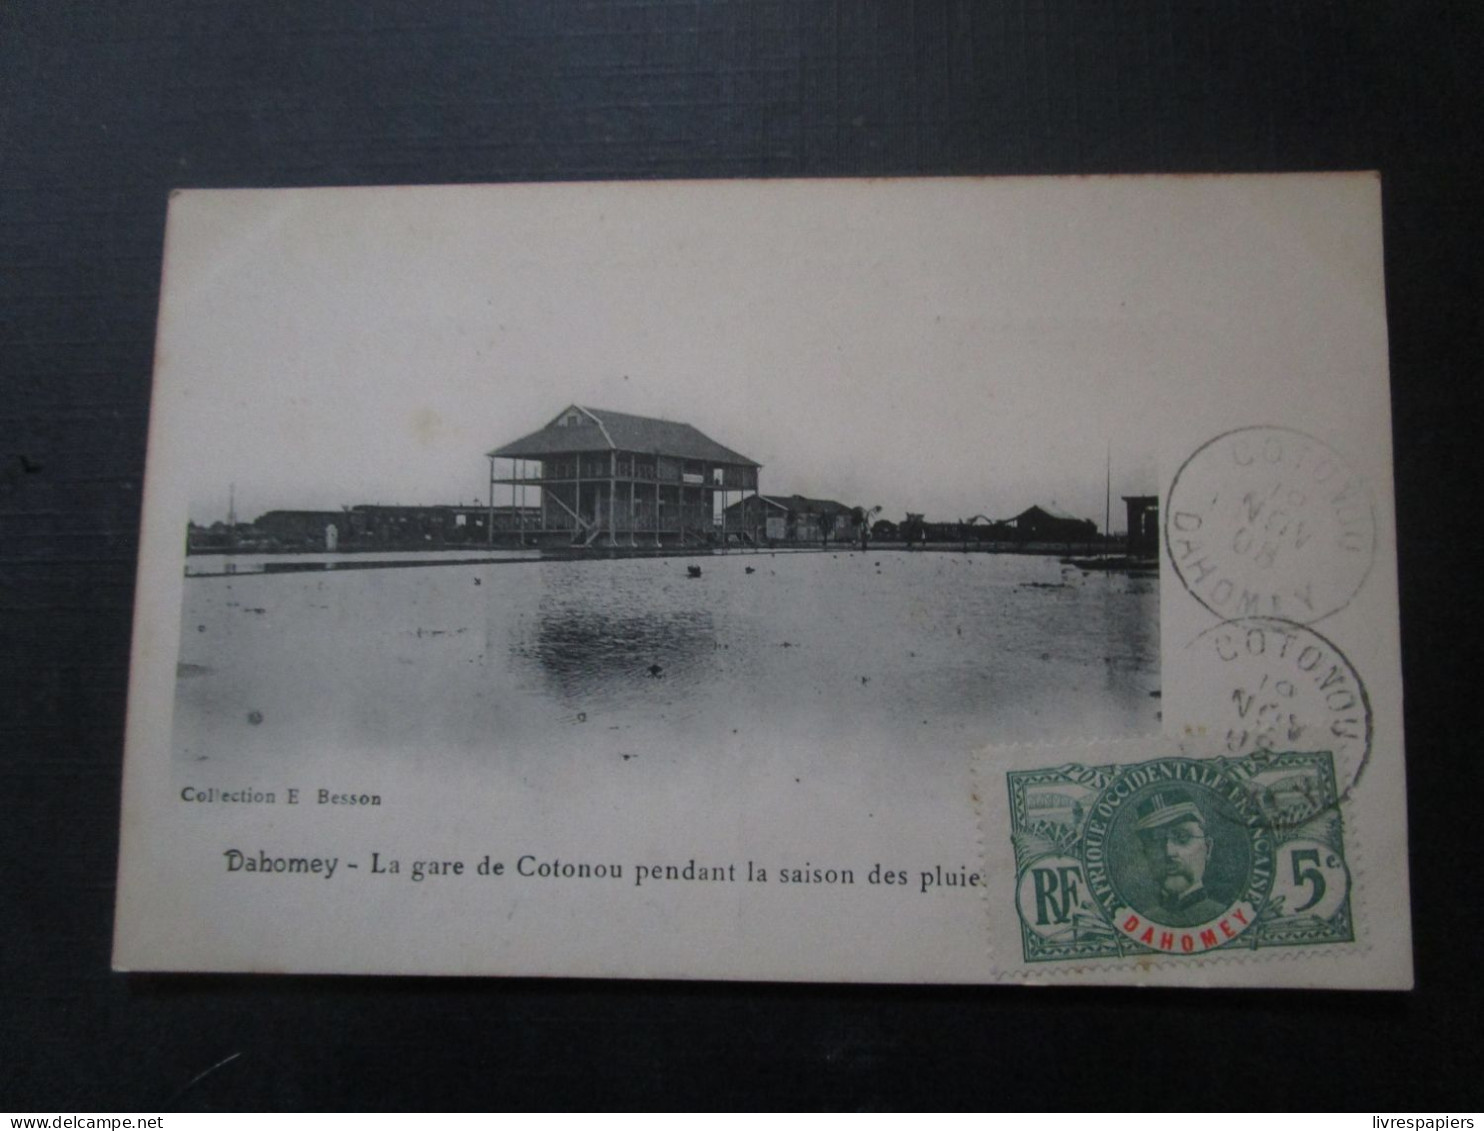 Benin Gare De Cotonou   Timbrée Dahomey - Benín